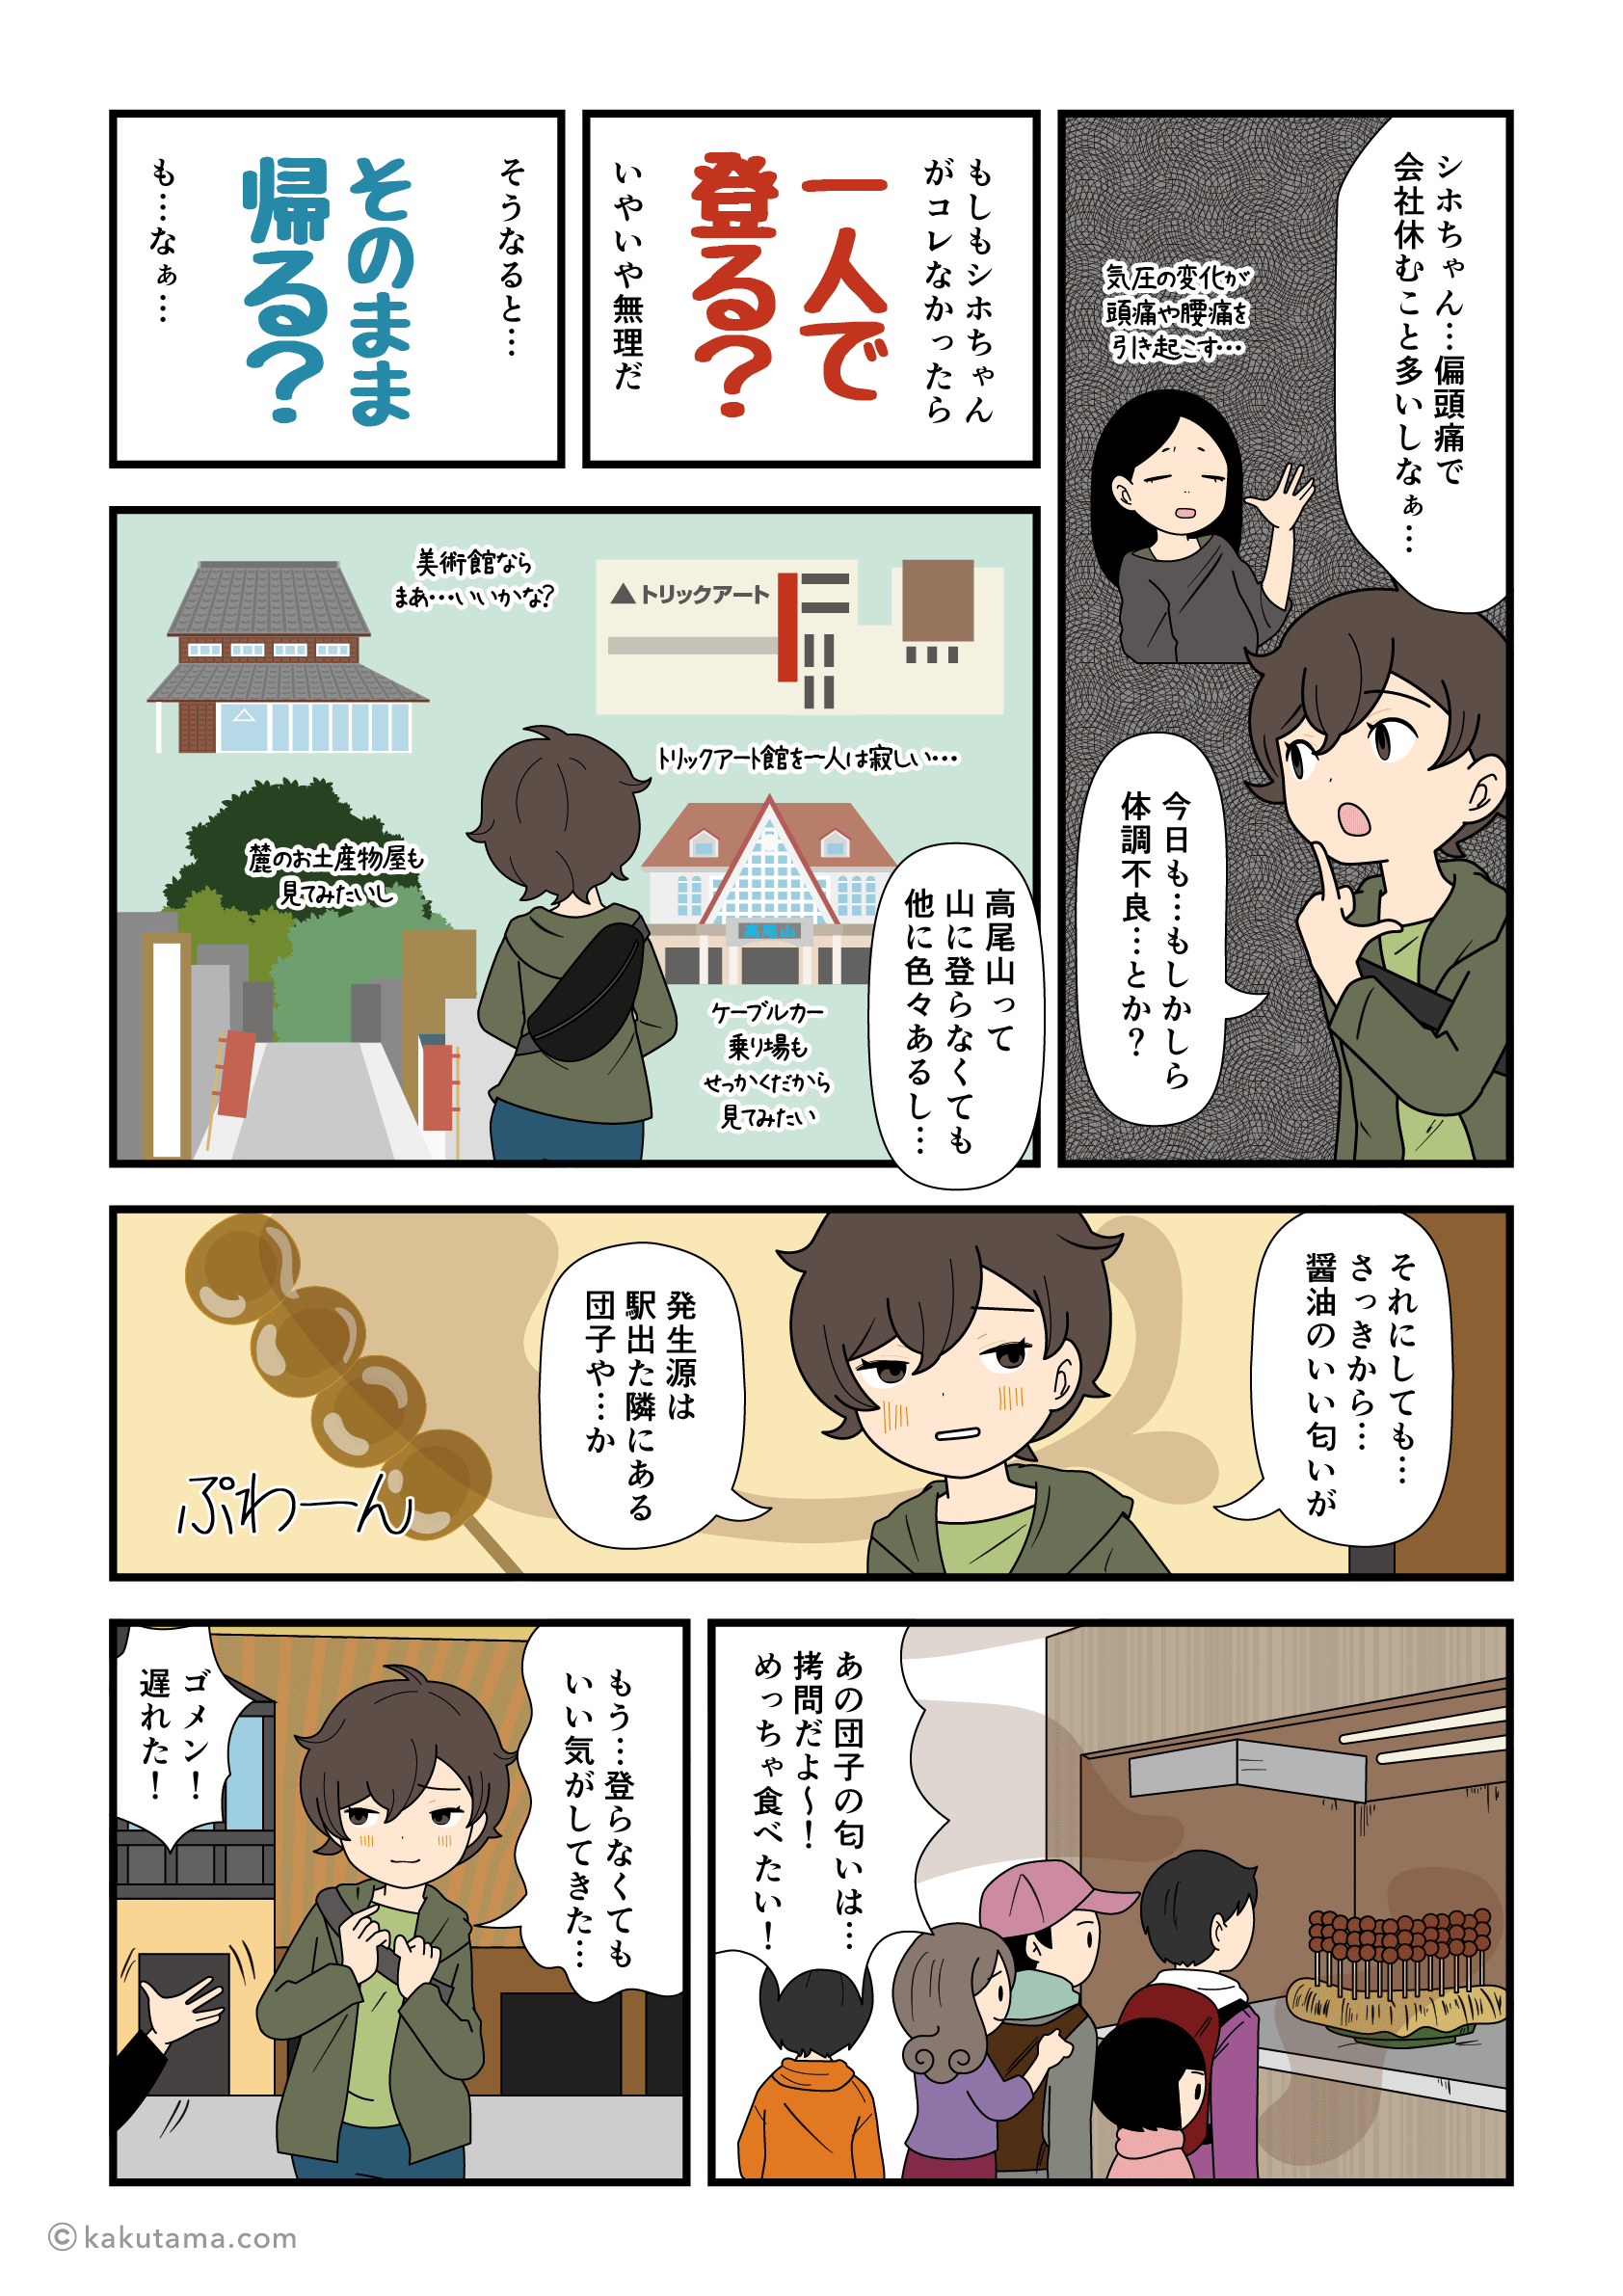 高尾山口駅は高尾山登山以外にも観光場所が多いと知る登山者の漫画